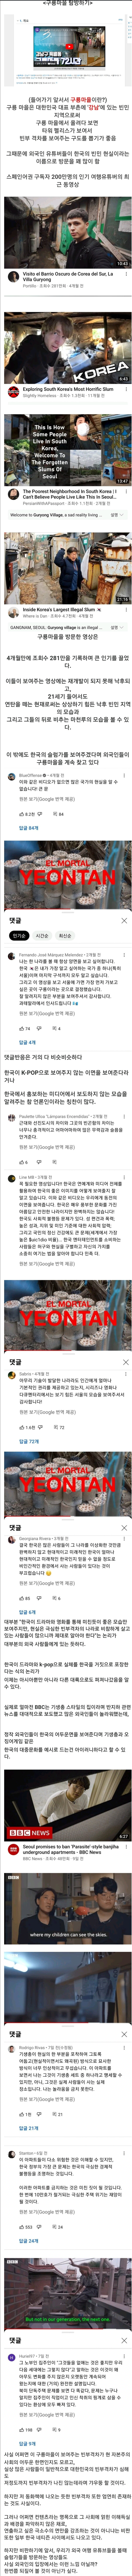 요즘 외국에서 유행중이라는 한국 콘텐츠